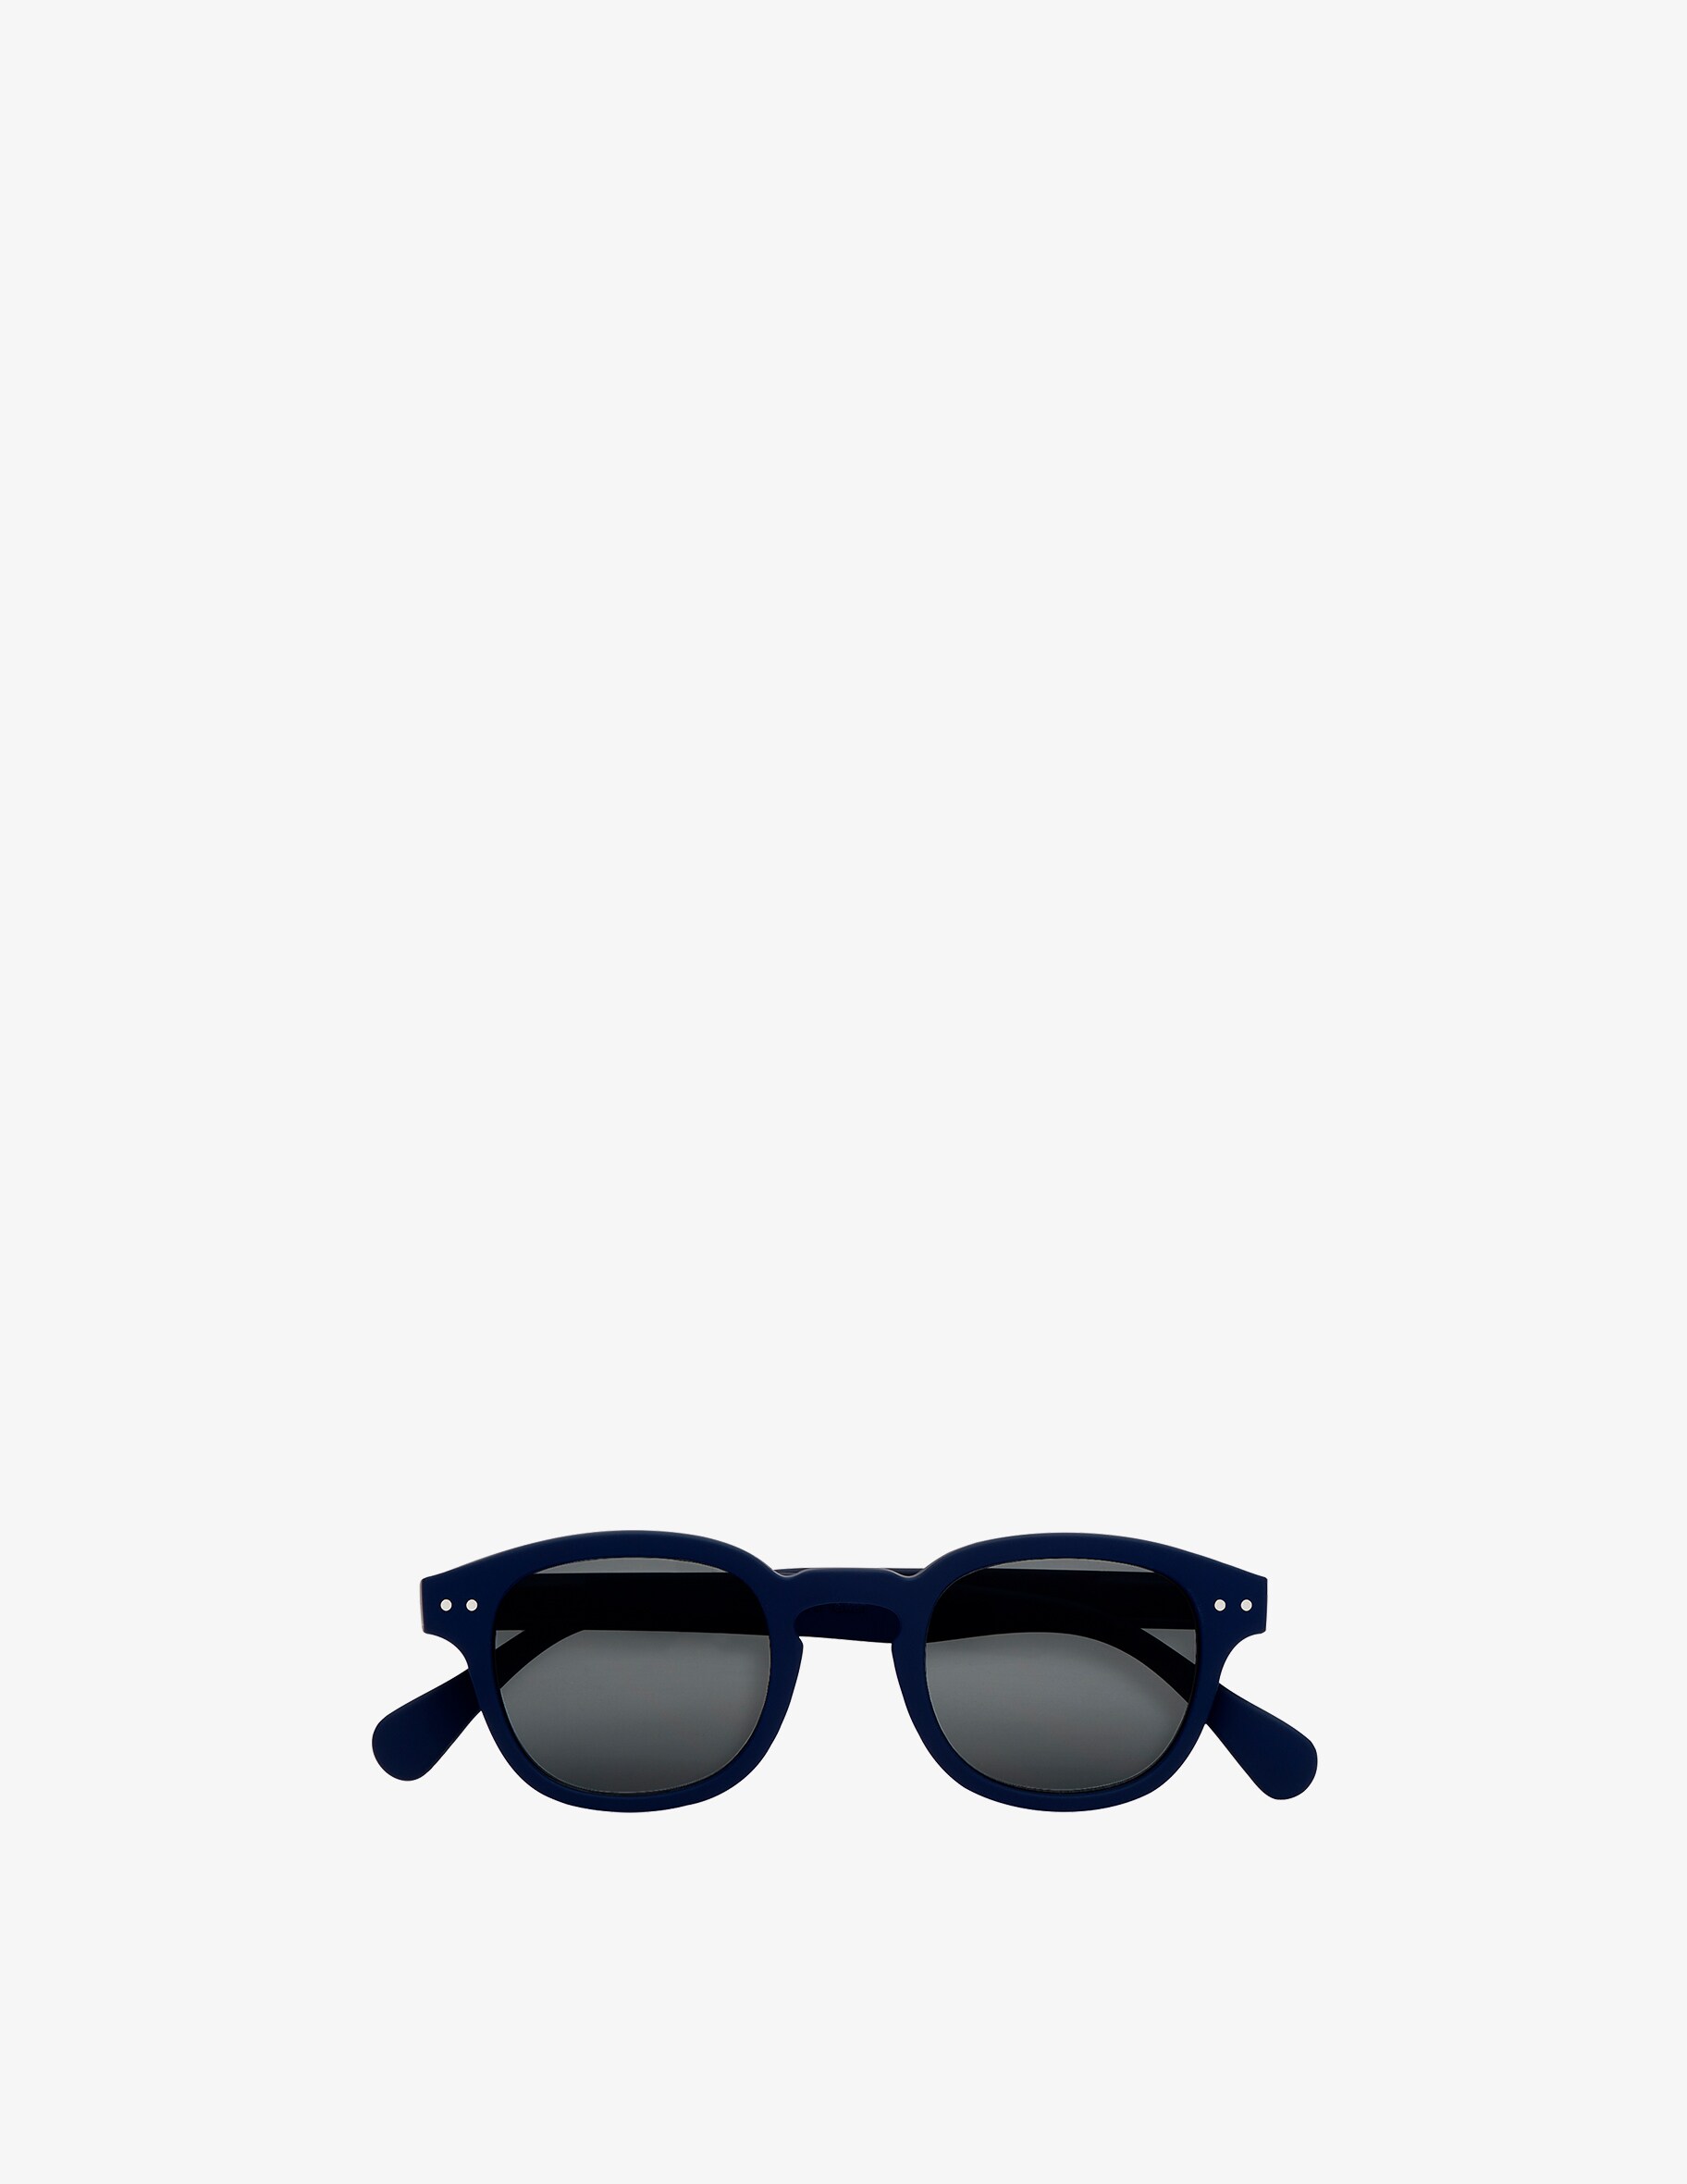 Солнцезащитные очки Модель #C Темно-Синие Izipizi